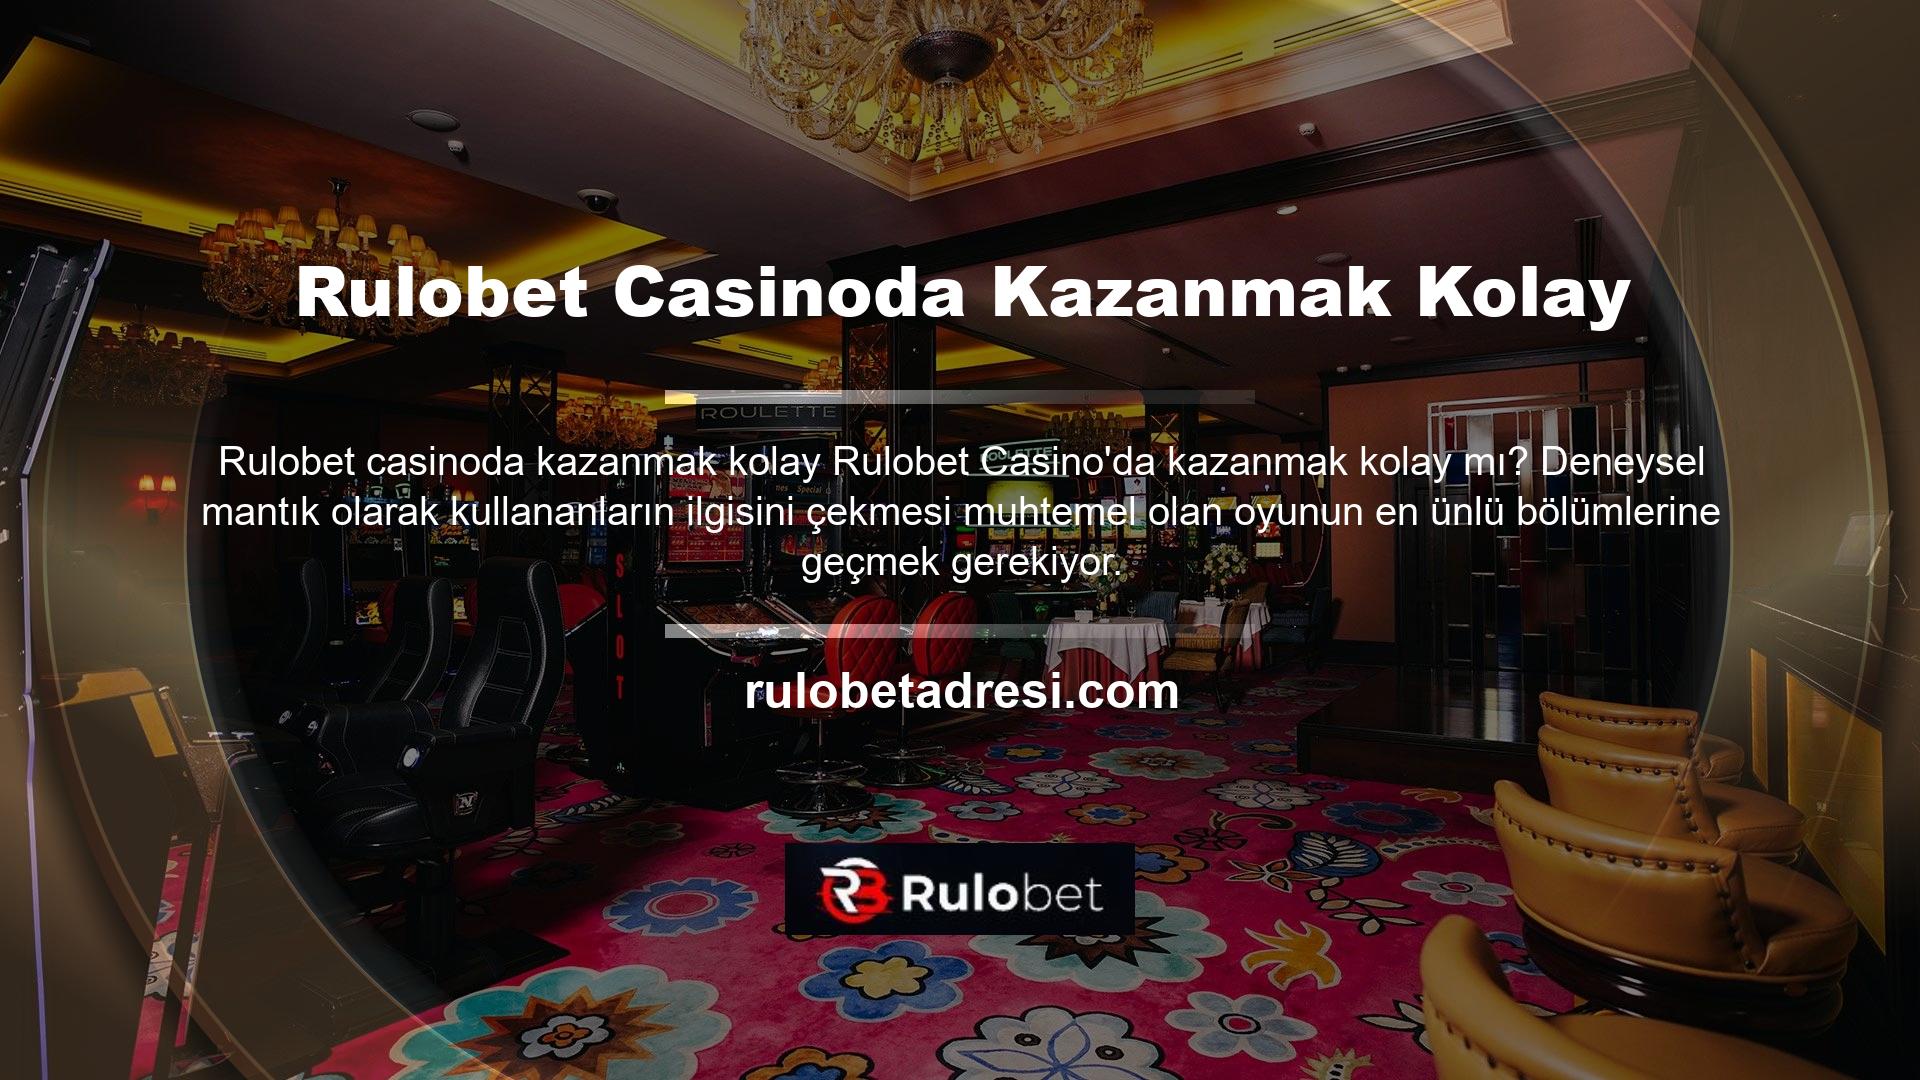 Rulobet Casino'da kazanma ve kaybetme kolaylığının da kendine göre güçlü ve zayıf yönleri var